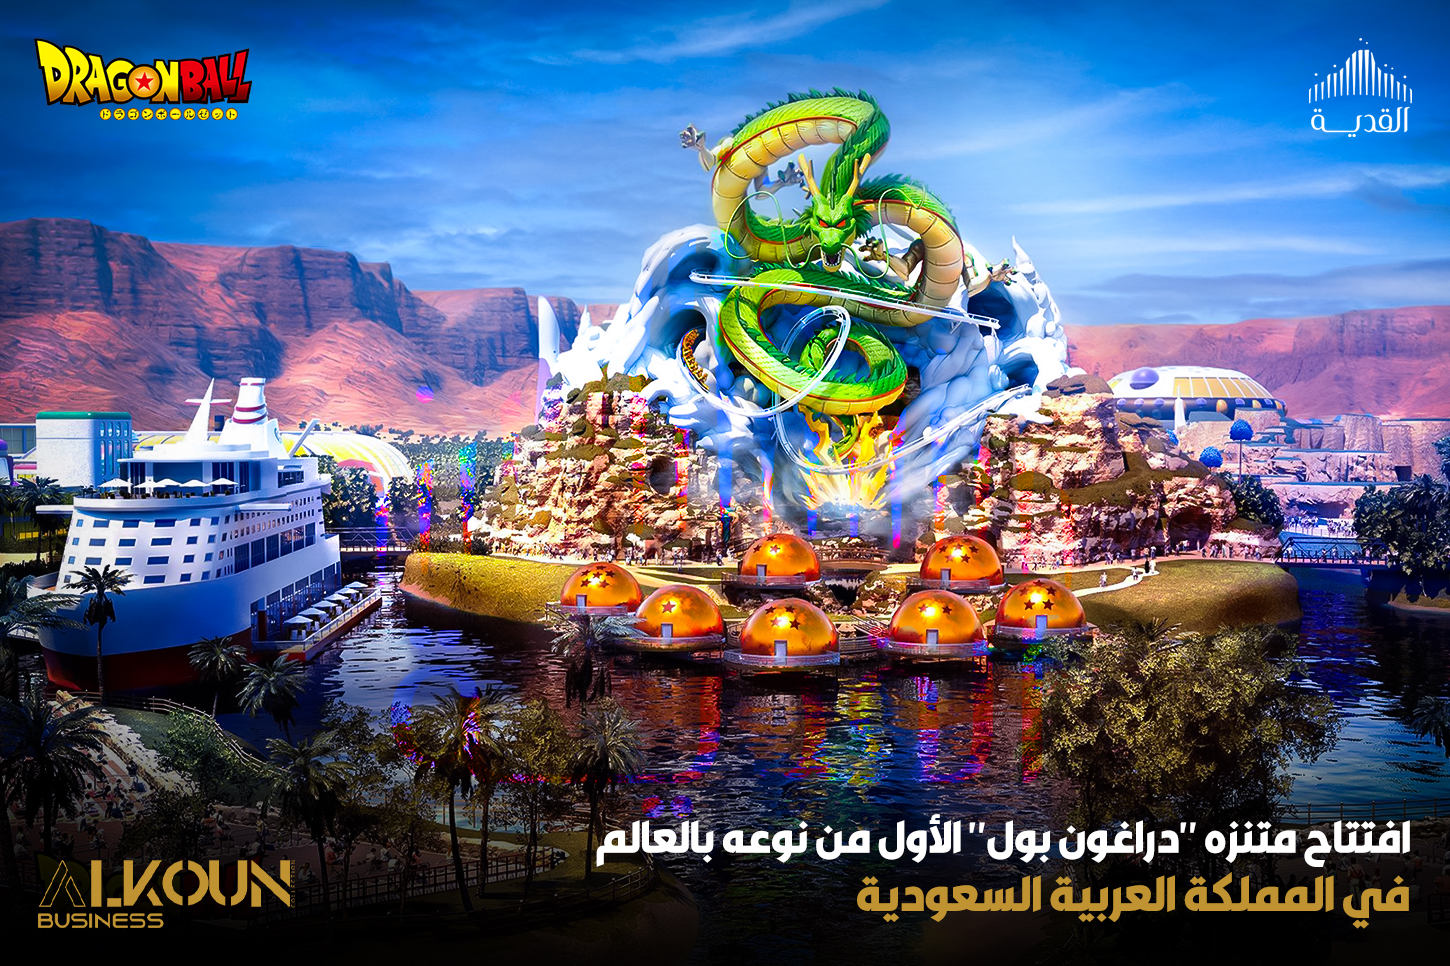 افتتاح متنزه "دراغون بول" الأول من نوعه بالعالم في المملكة العربية السعودية